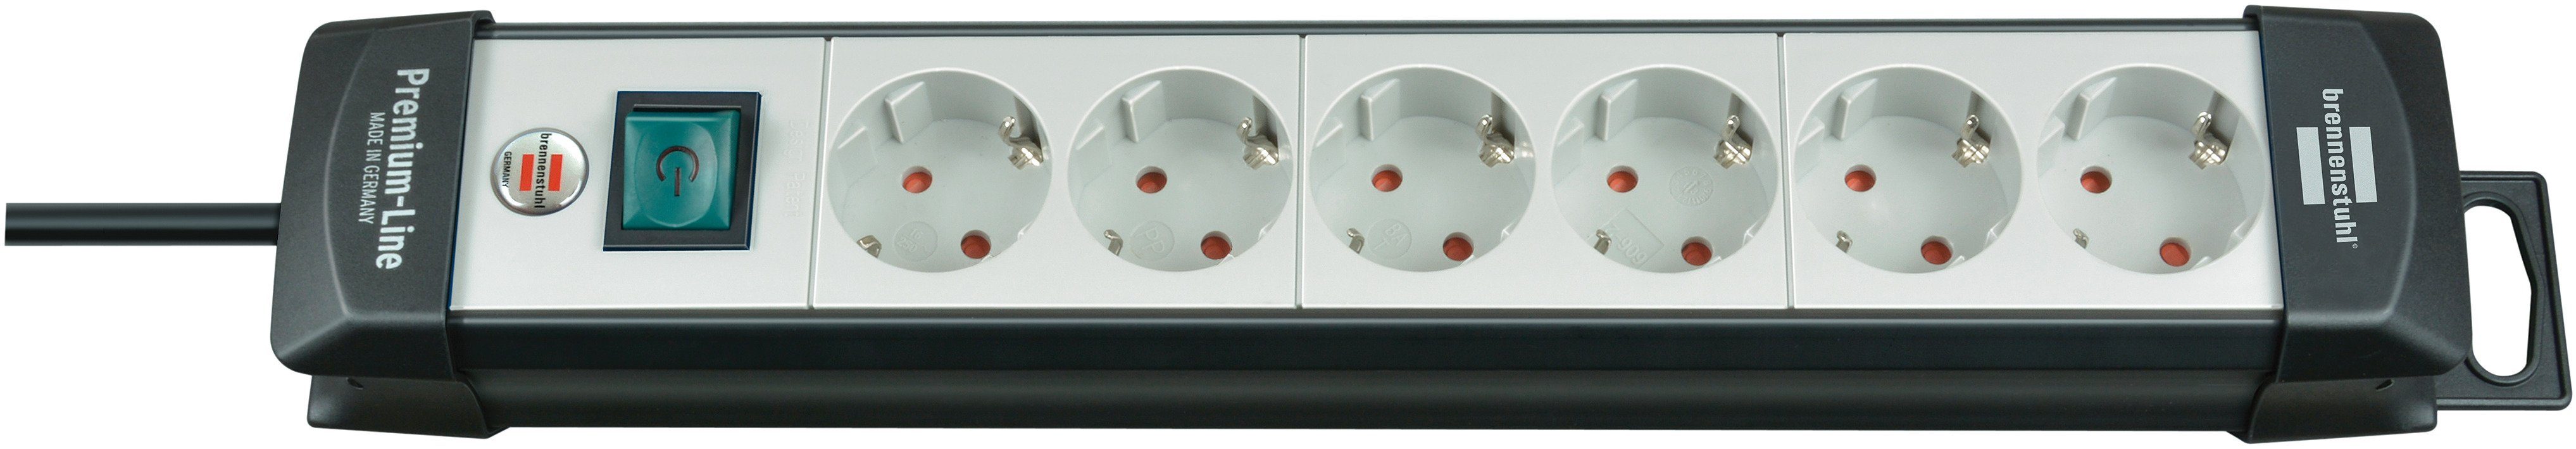 Brennenstuhl Premium-Line Steckdosenleiste 6-fach (Kabellänge 3 m), mit Schalter und 45° Anordnung der Steckdosen | Steckdosenleisten